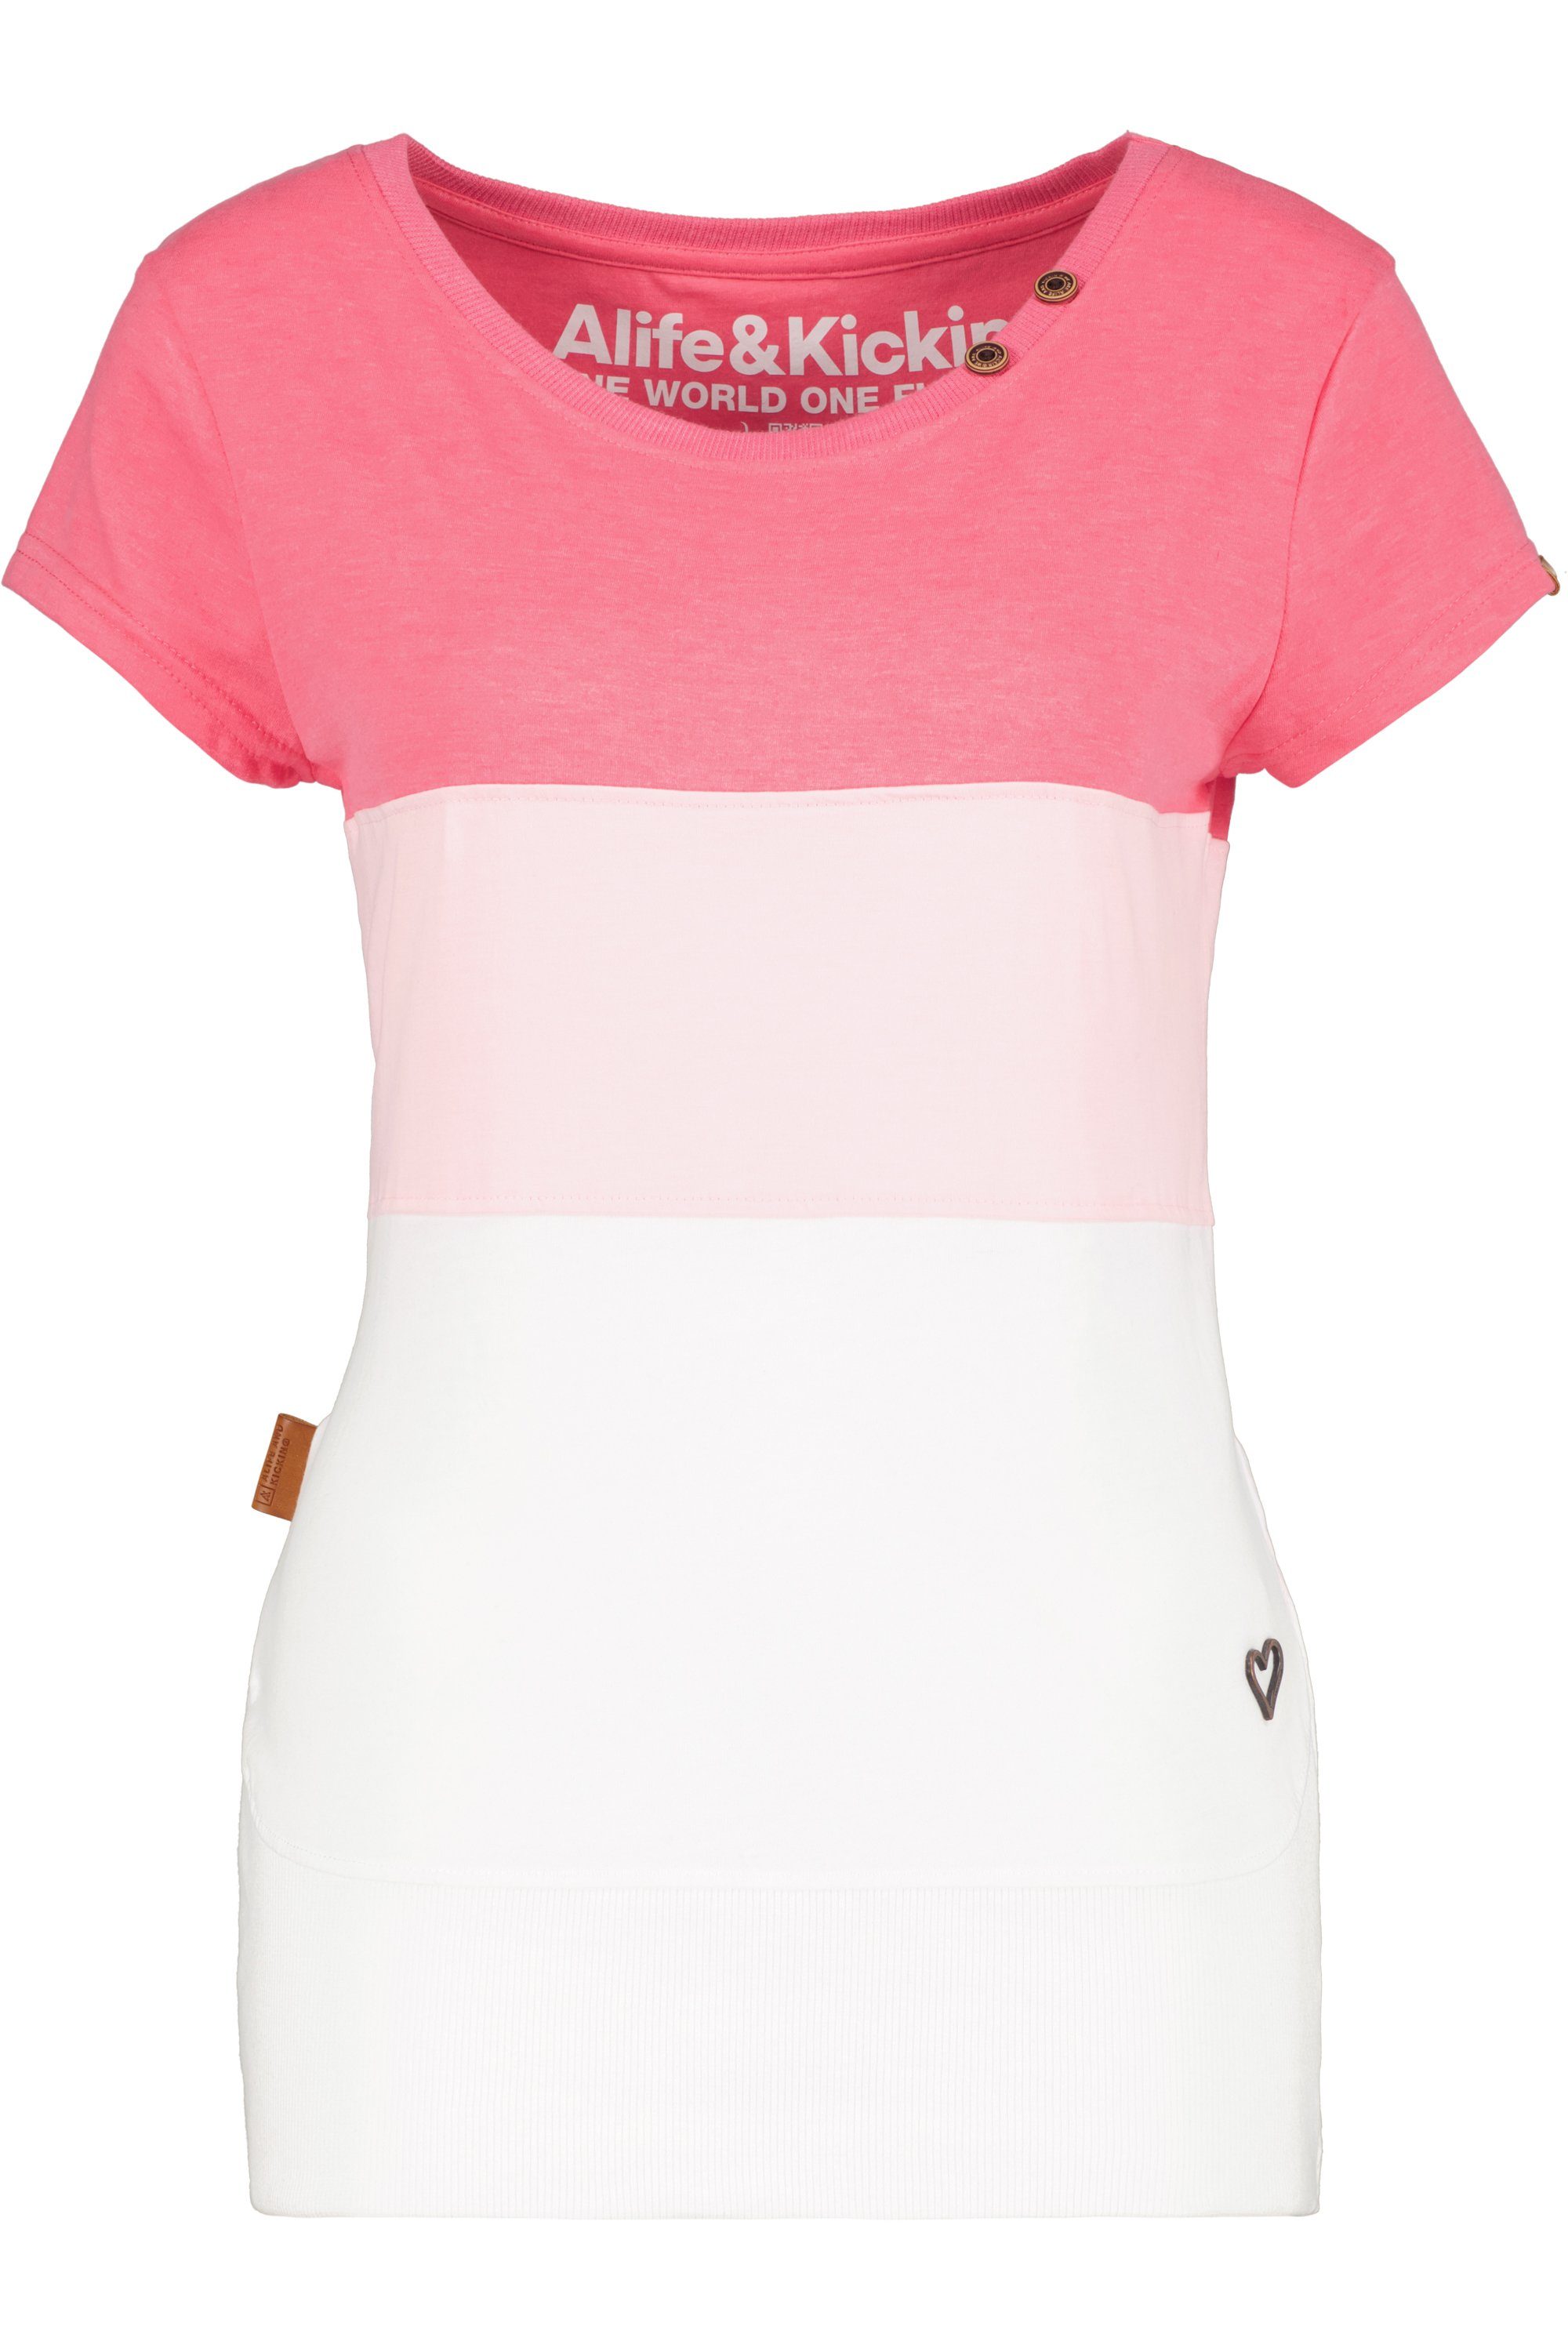 Damen T-Shirt flamingo CoraAK & Kickin Alife Shirt T-Shirt